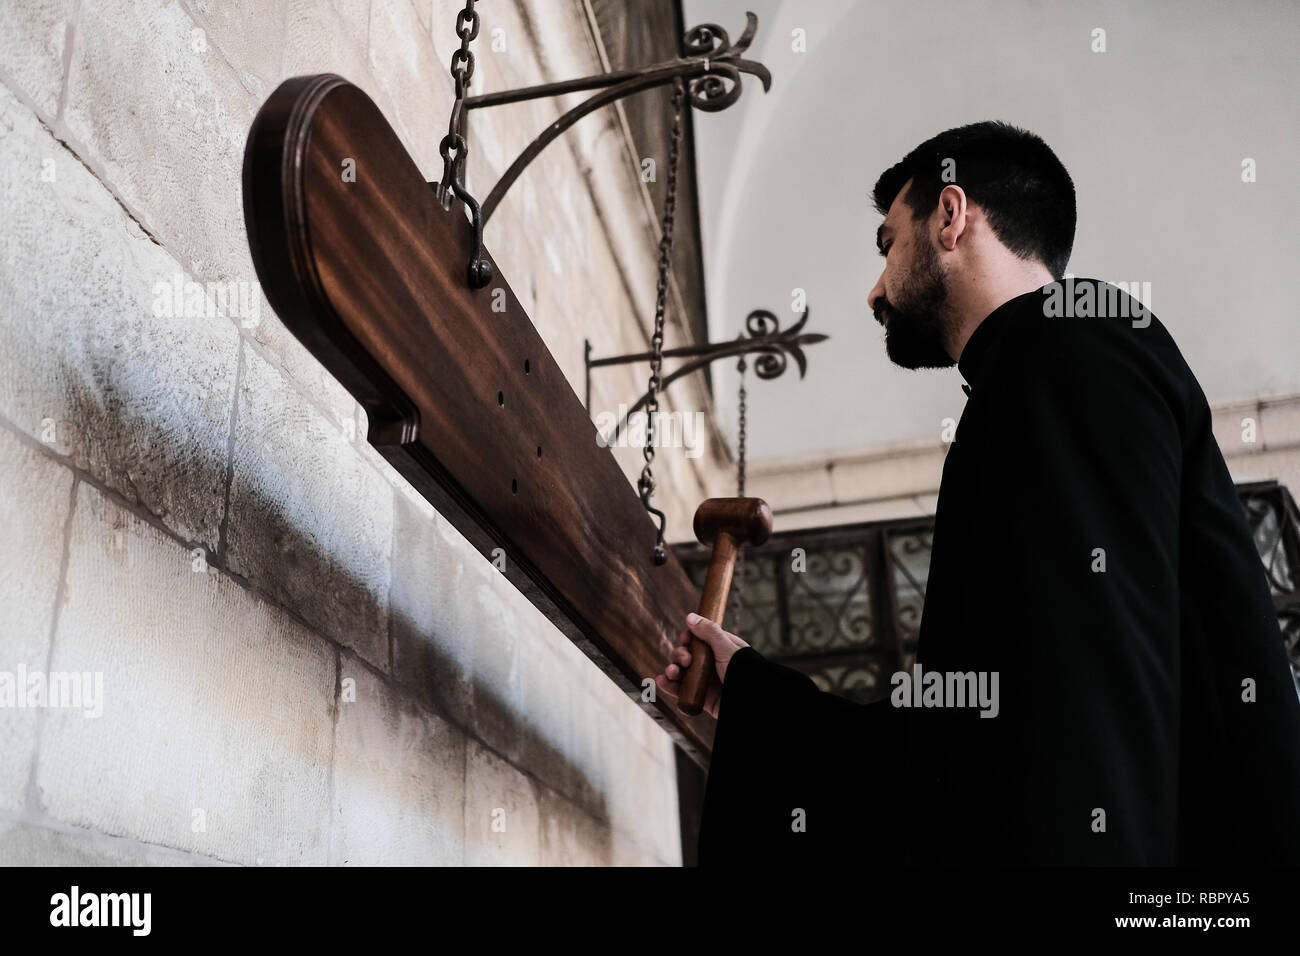 Eine Priesterschaft Seminarist Streiks Nakos oder simandron, Holzplatten statt der Glocken wird verwendet, wenn der osmanischen Herrscher das Läuten der Kirchenglocken verbot, t Stockfoto